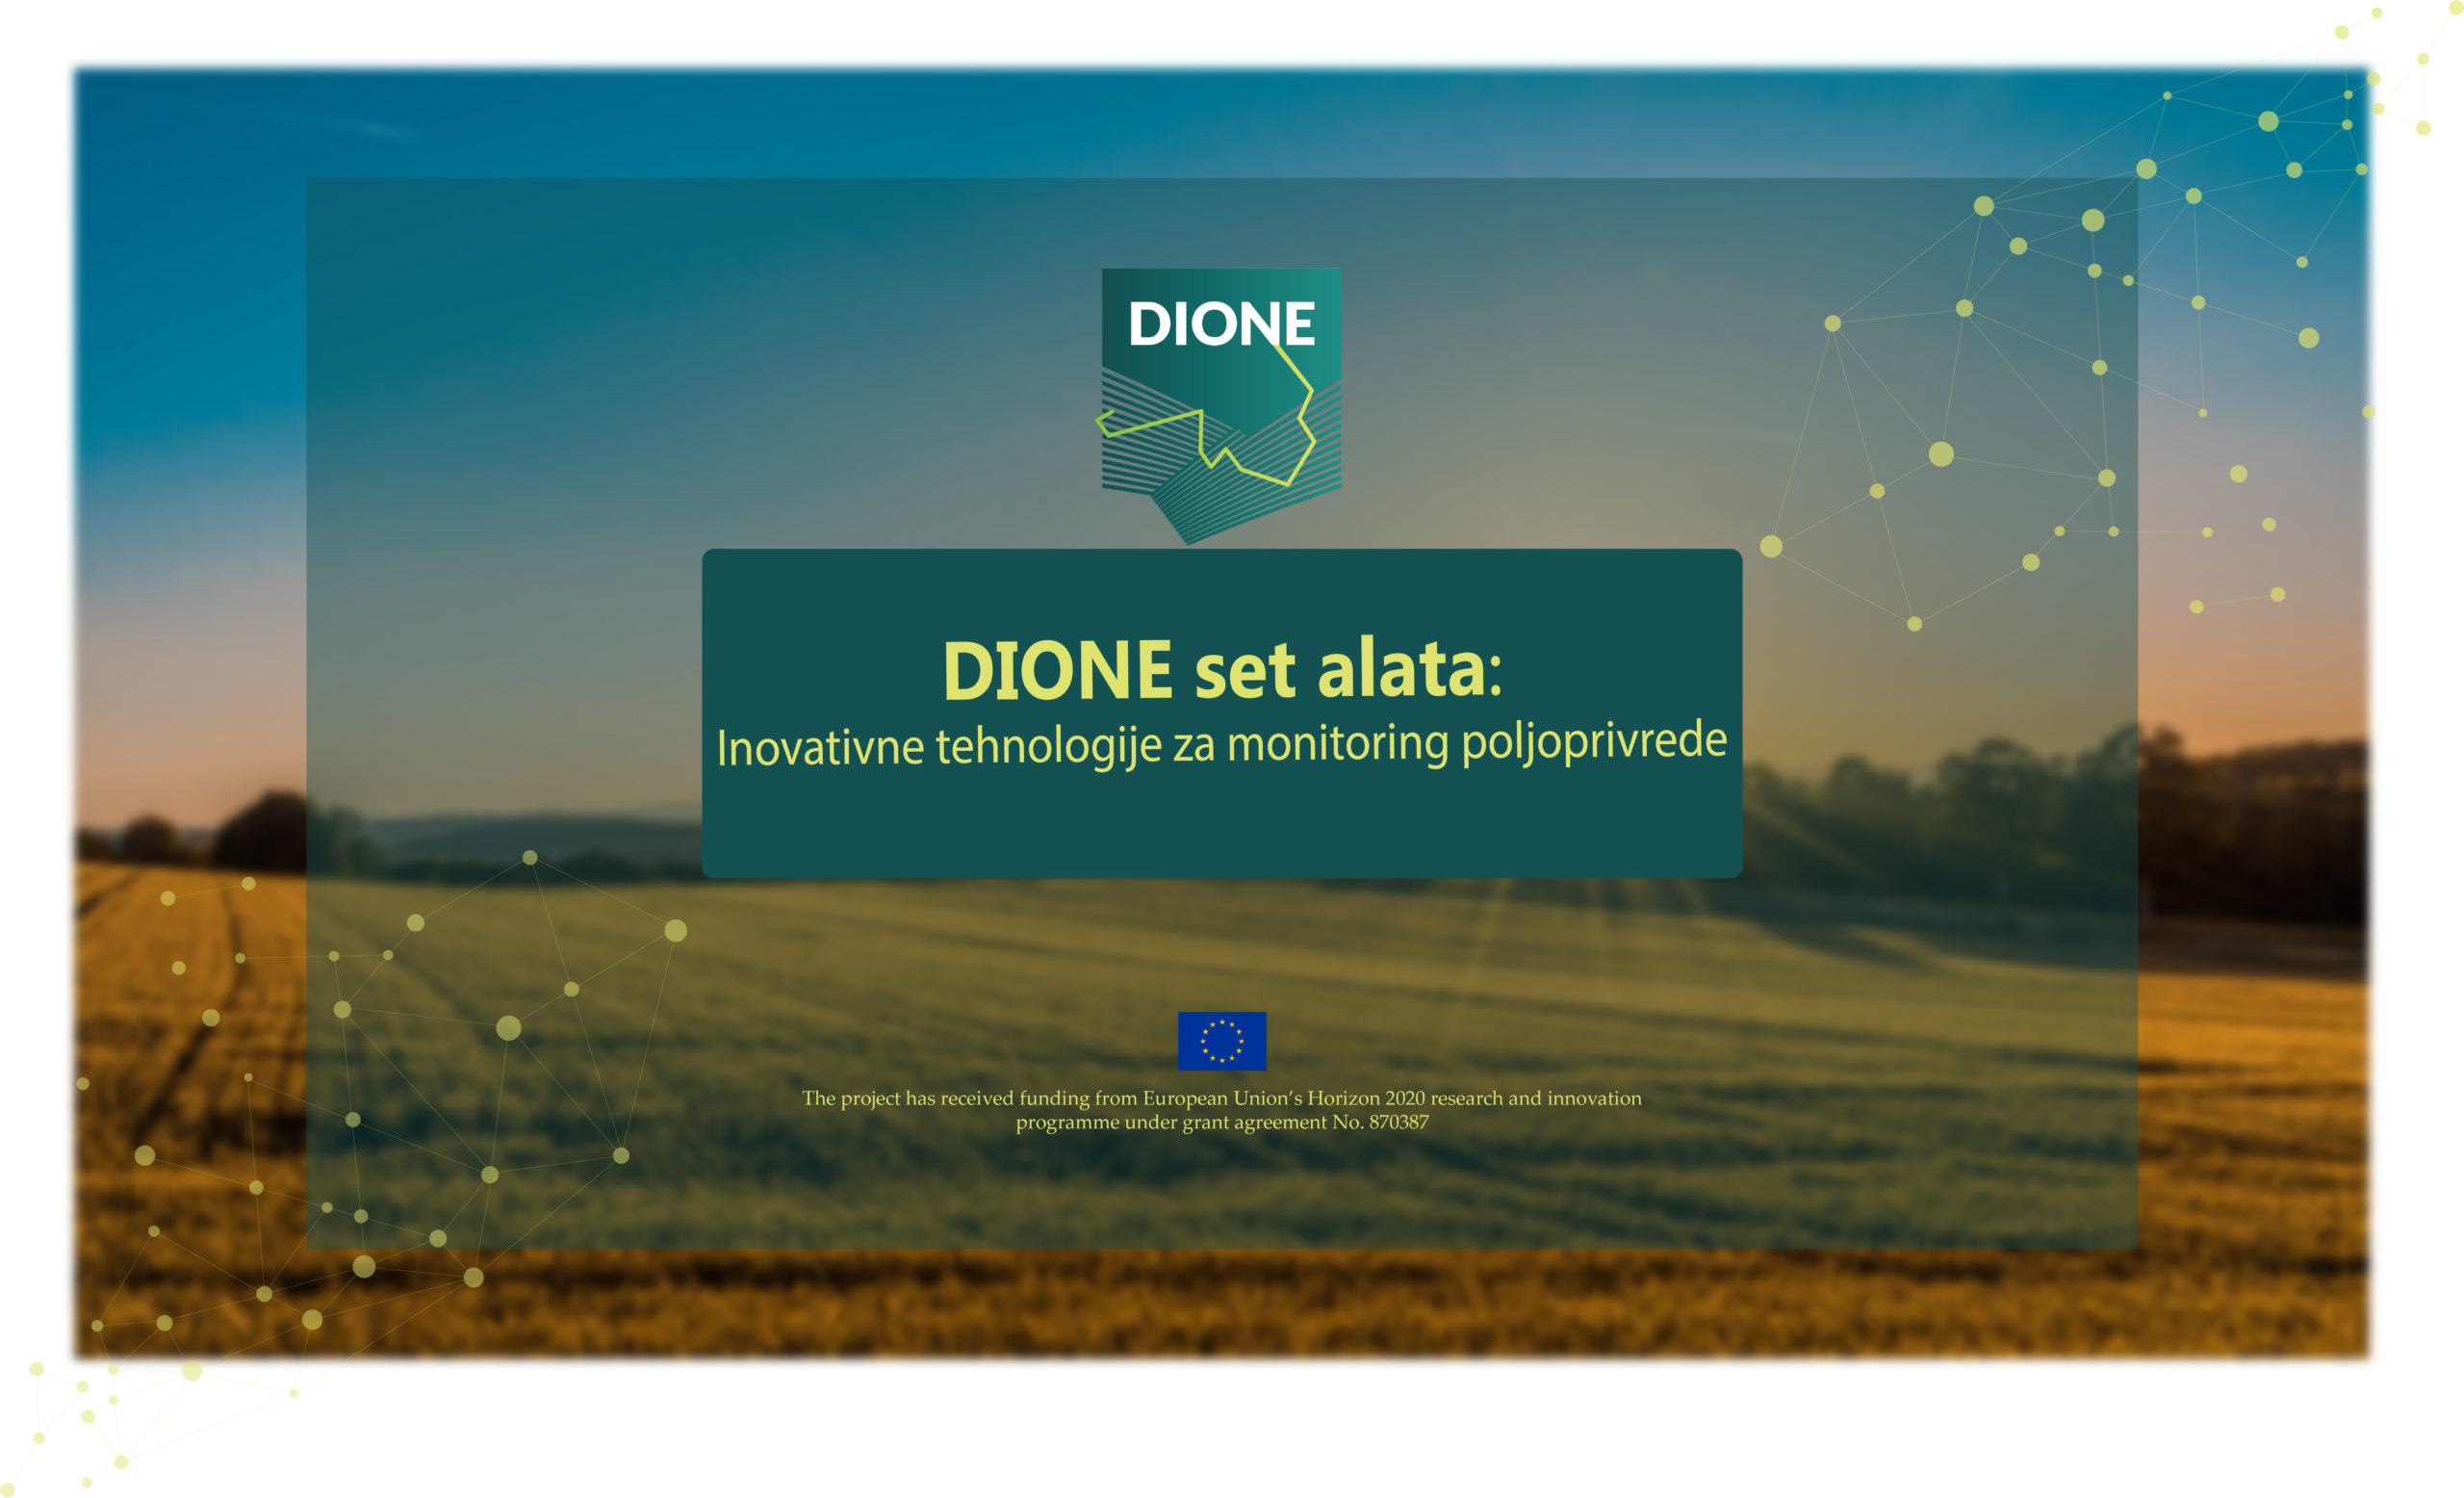 dione-set-alata-inovativne-tehnologije-inosens